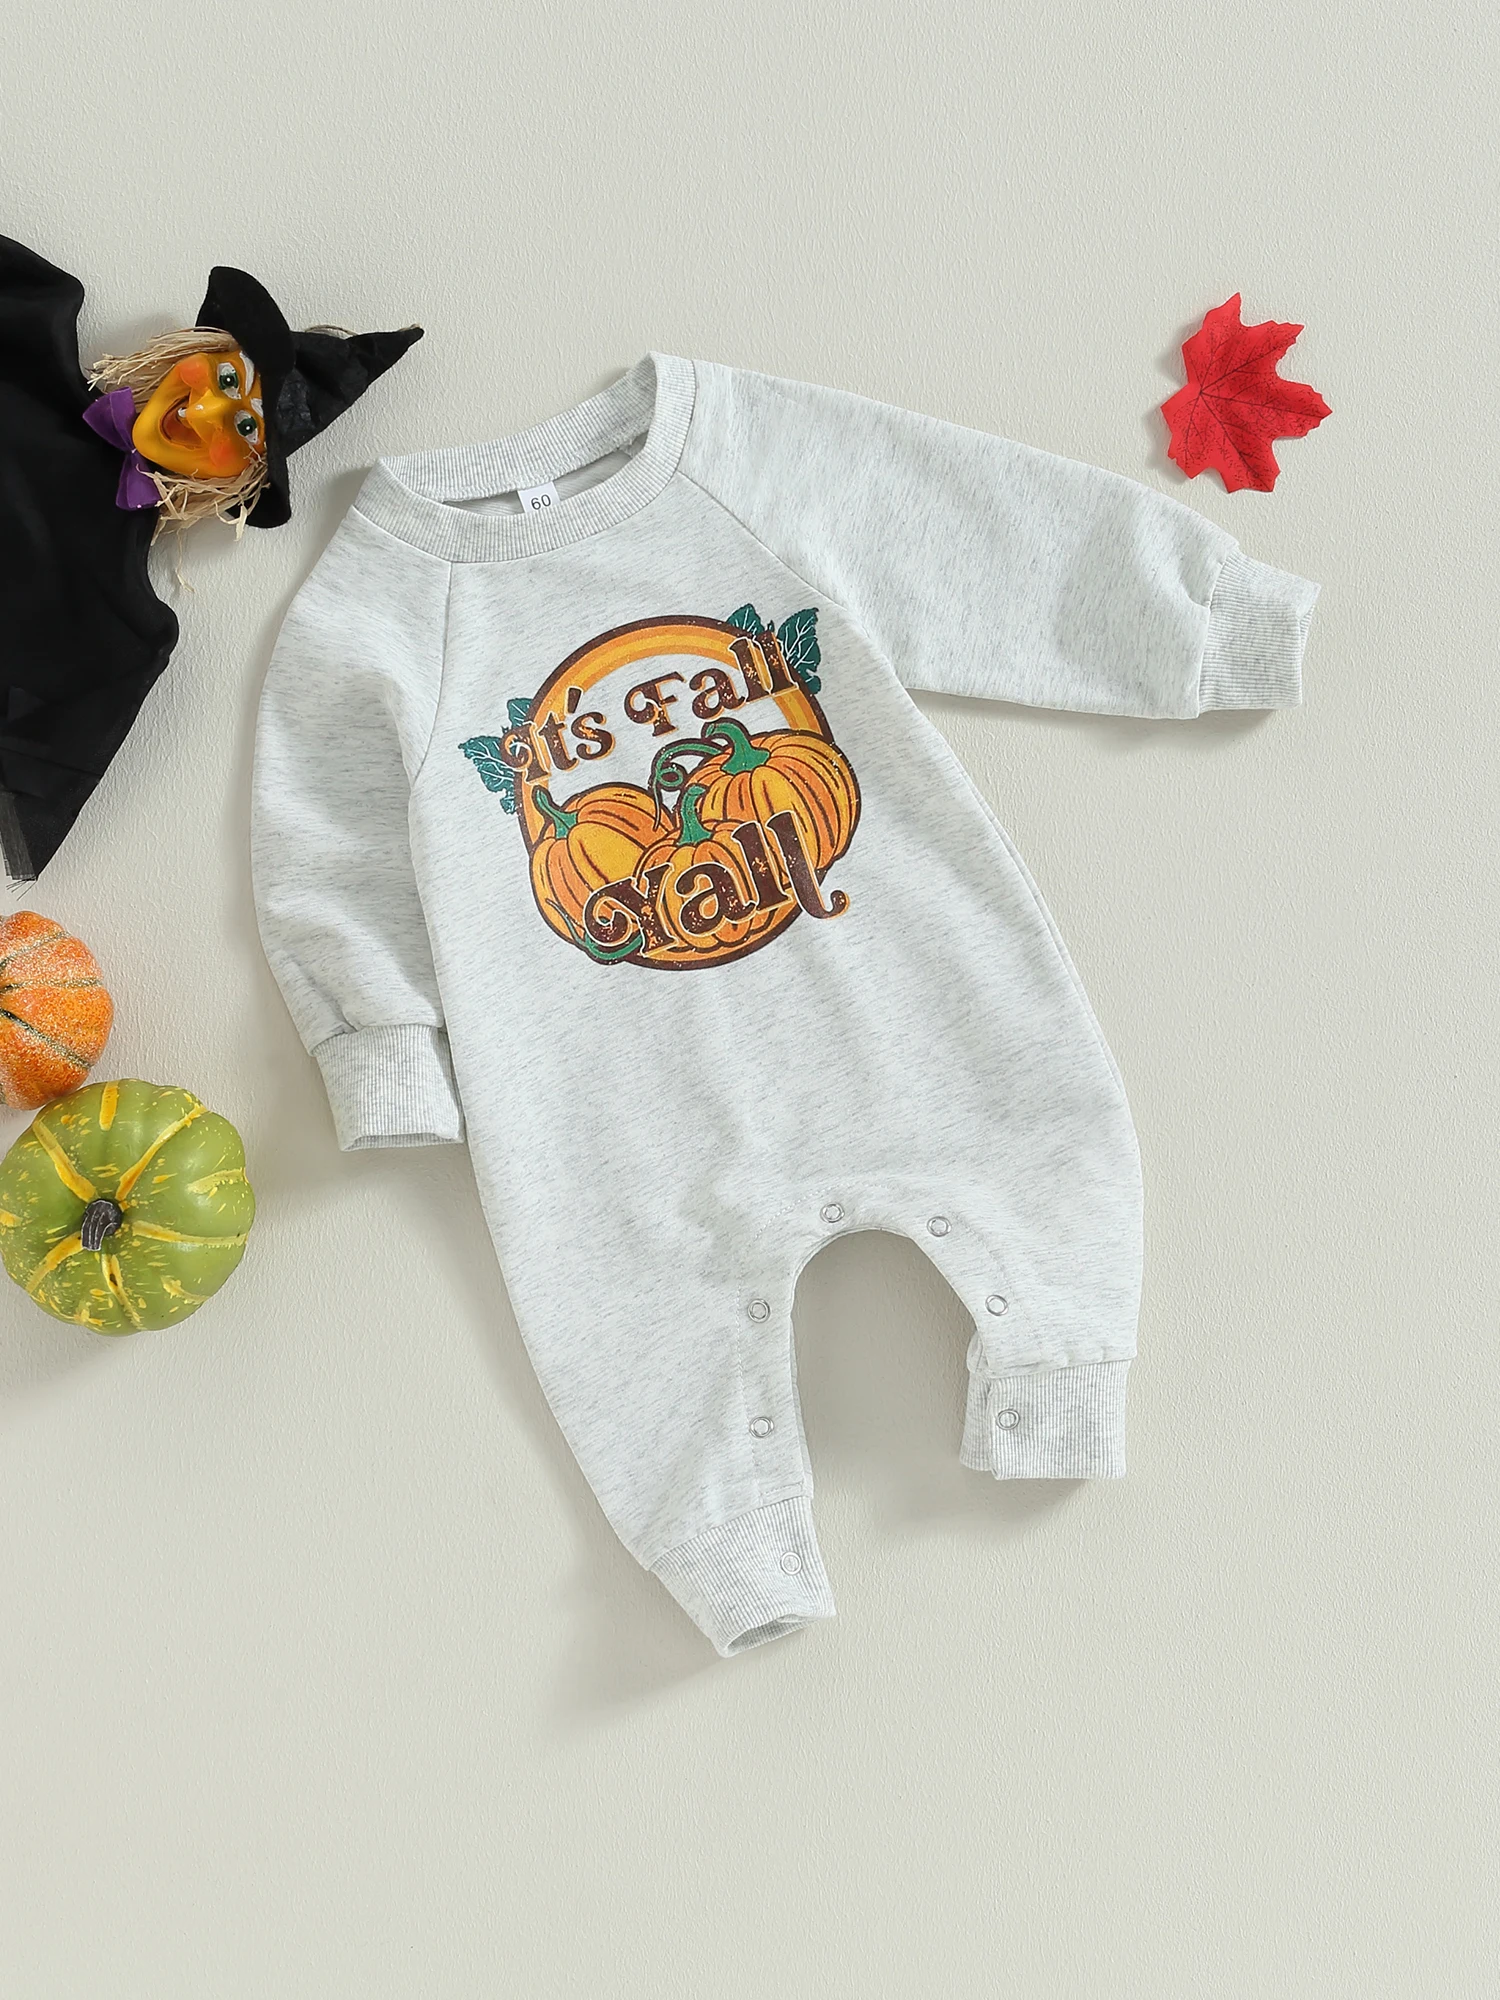 

Милый костюм на Хэллоуин для младенцев, очаровательный комбинезон с тыквой для маленьких мальчиков и девочек, идеально подходит для осени и зимы